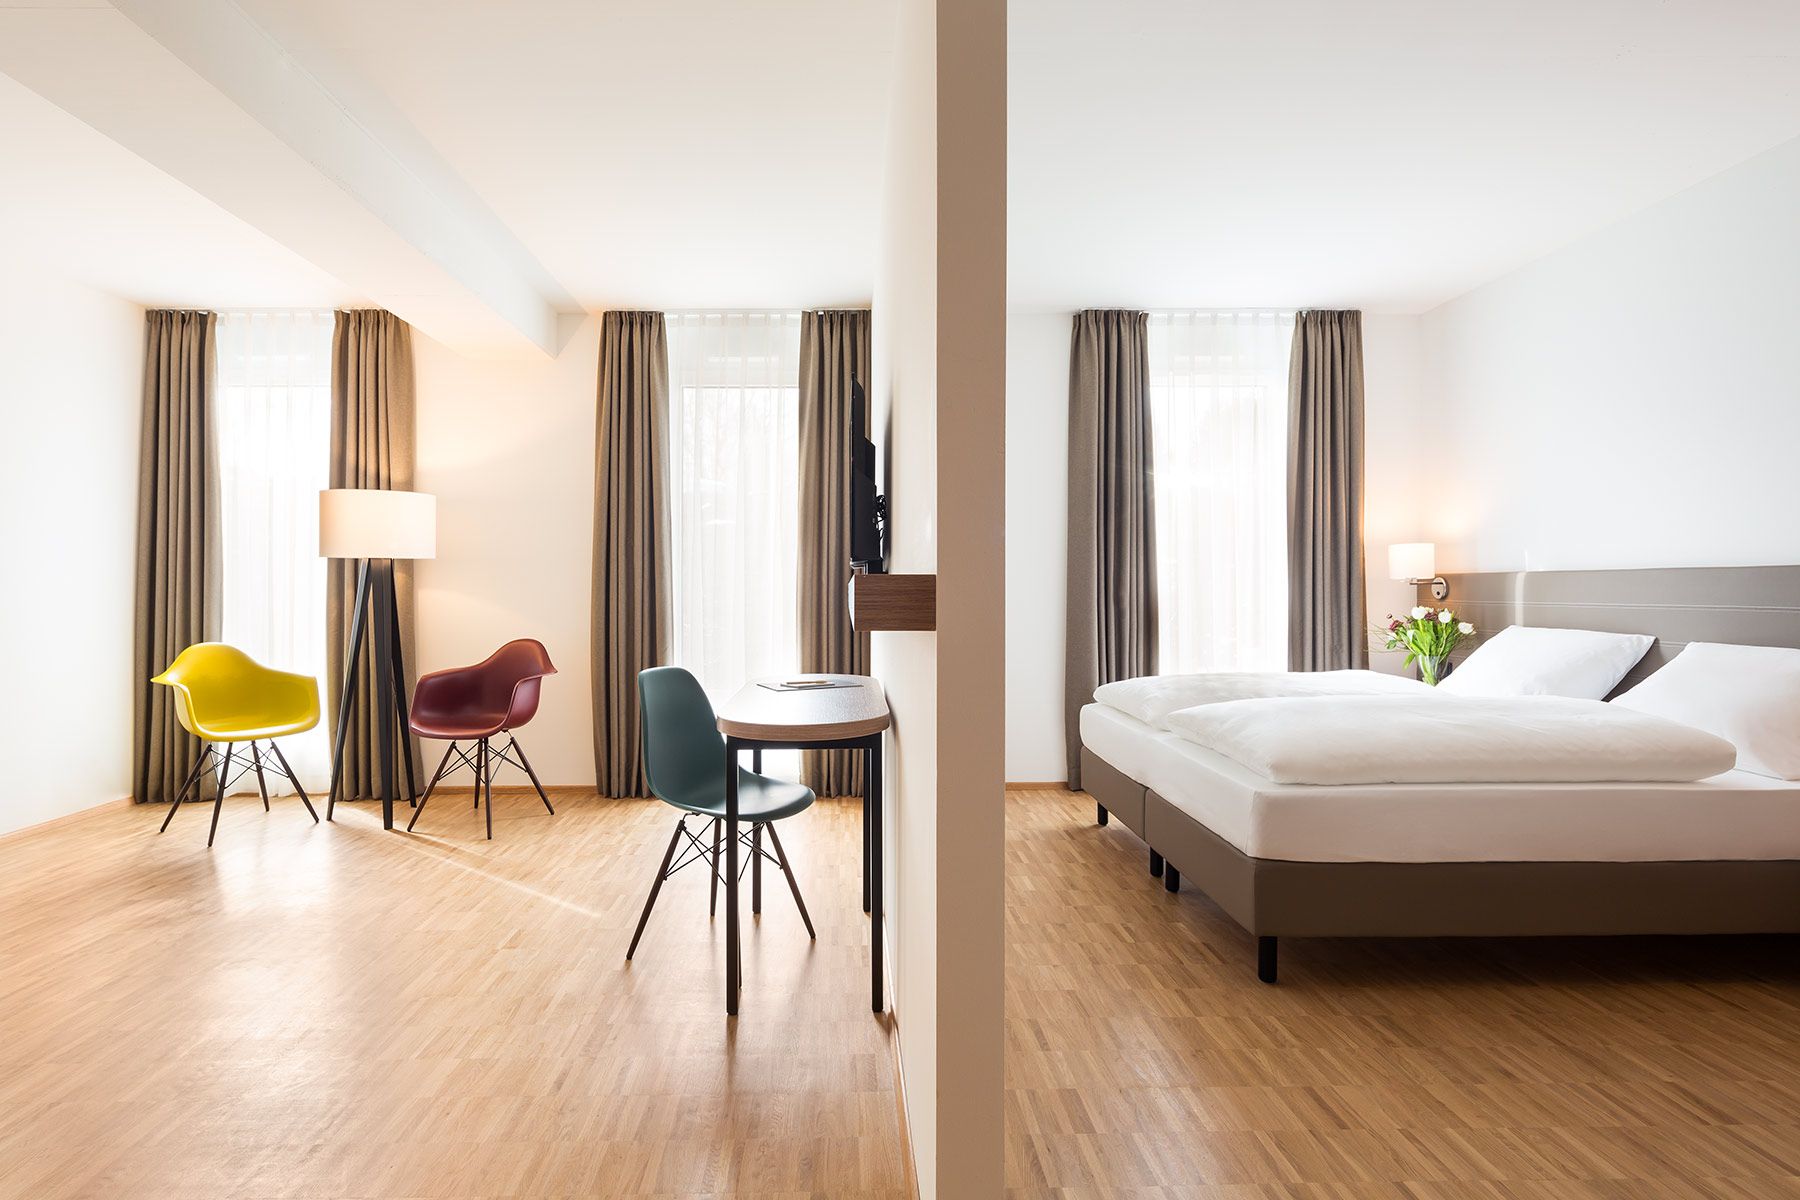 helles und geräumiges Hotelzimmer mit Raumteiler, Doppelbett und bunten Stühlen